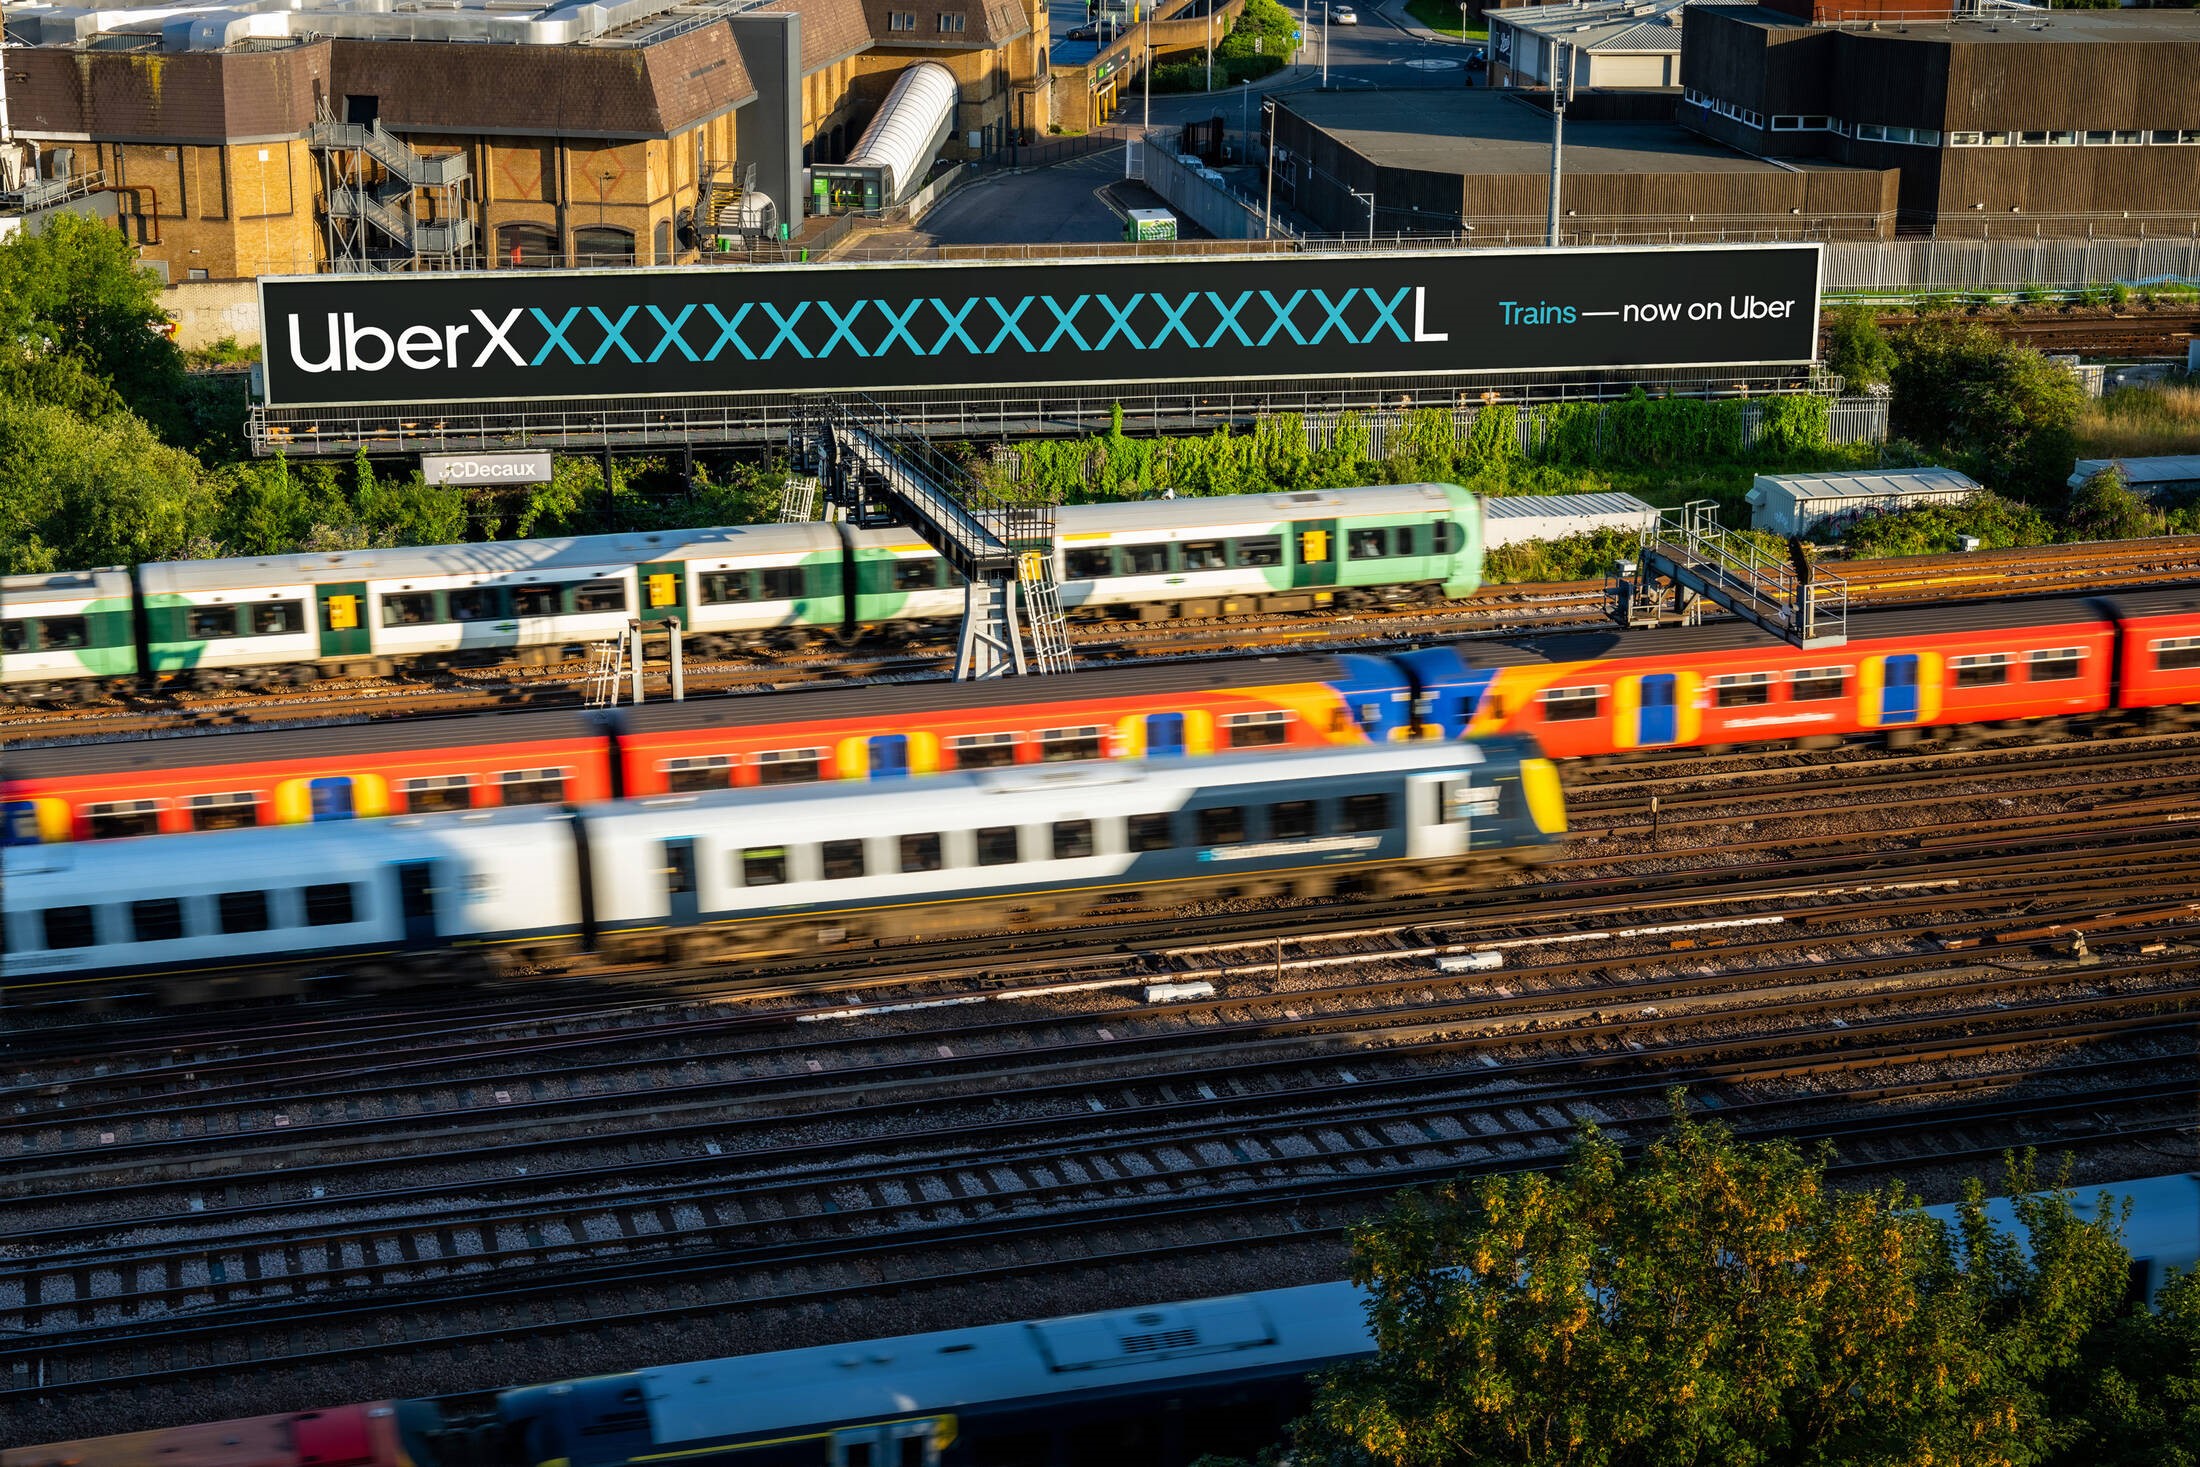 Uber可以预定火车了？是XXXXXXXXXXL号的！